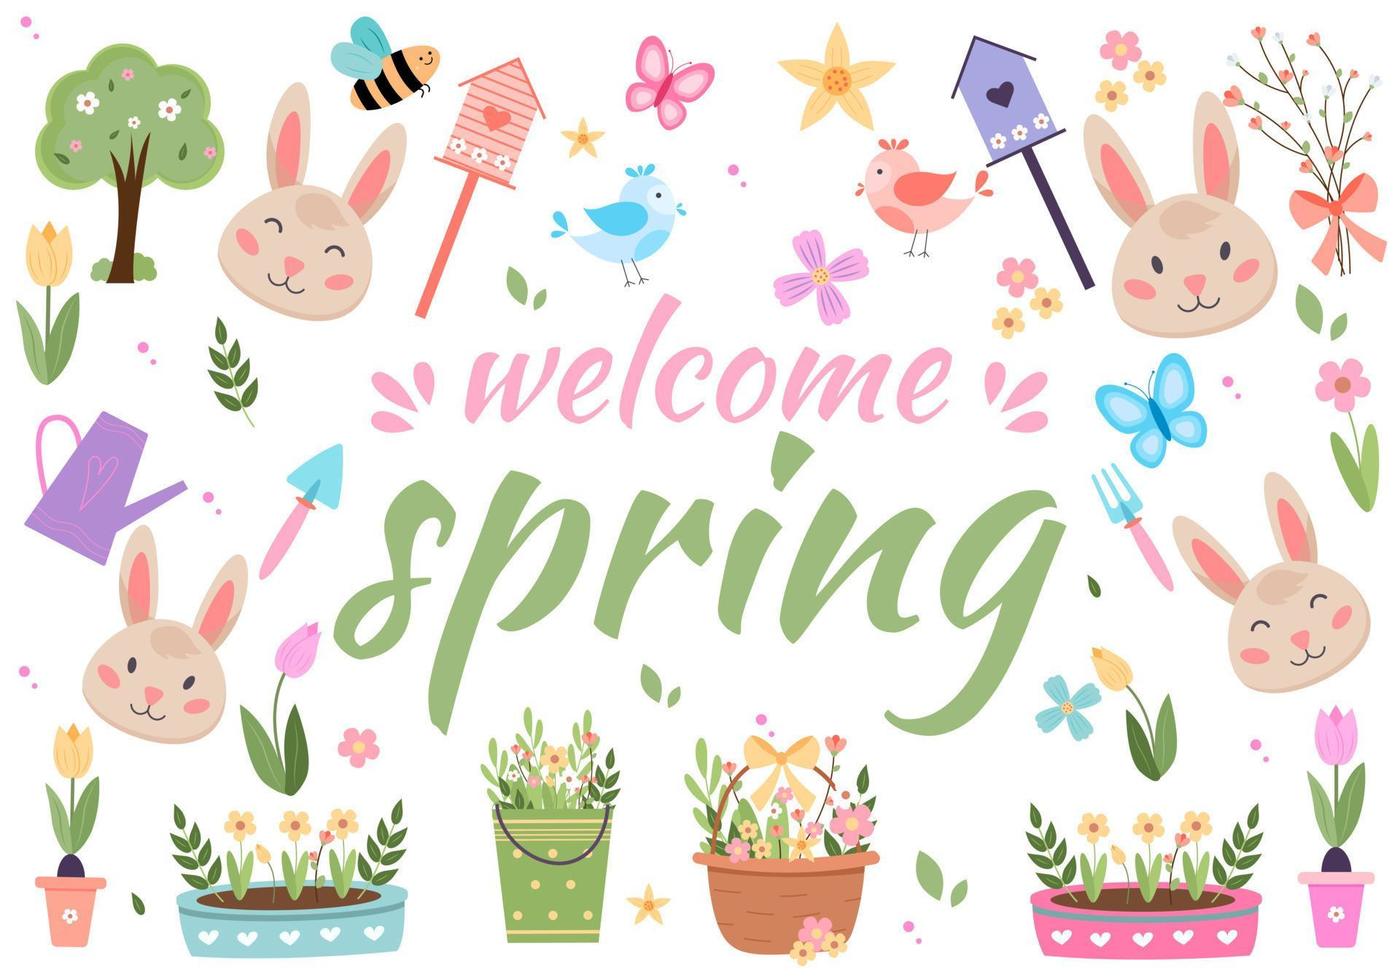 Ostern Frühling Vektor mit süß Hasen, Eier, Vögel, Bienen, Schmetterlinge. Hand gezeichnet eben Karikatur Elemente.